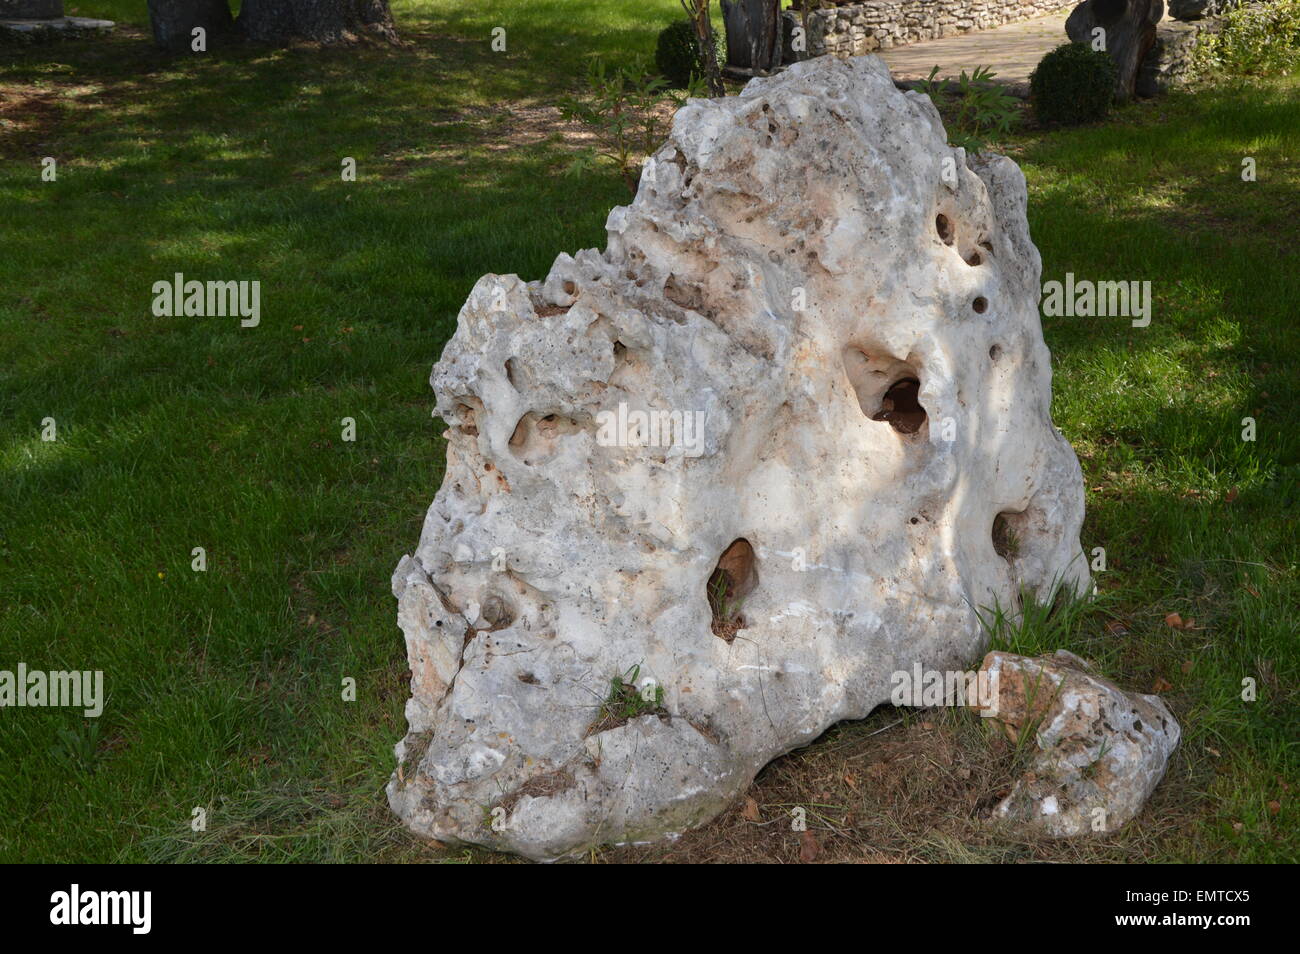 Un étrange gros rocher dans un jardin méditerranéen Banque D'Images